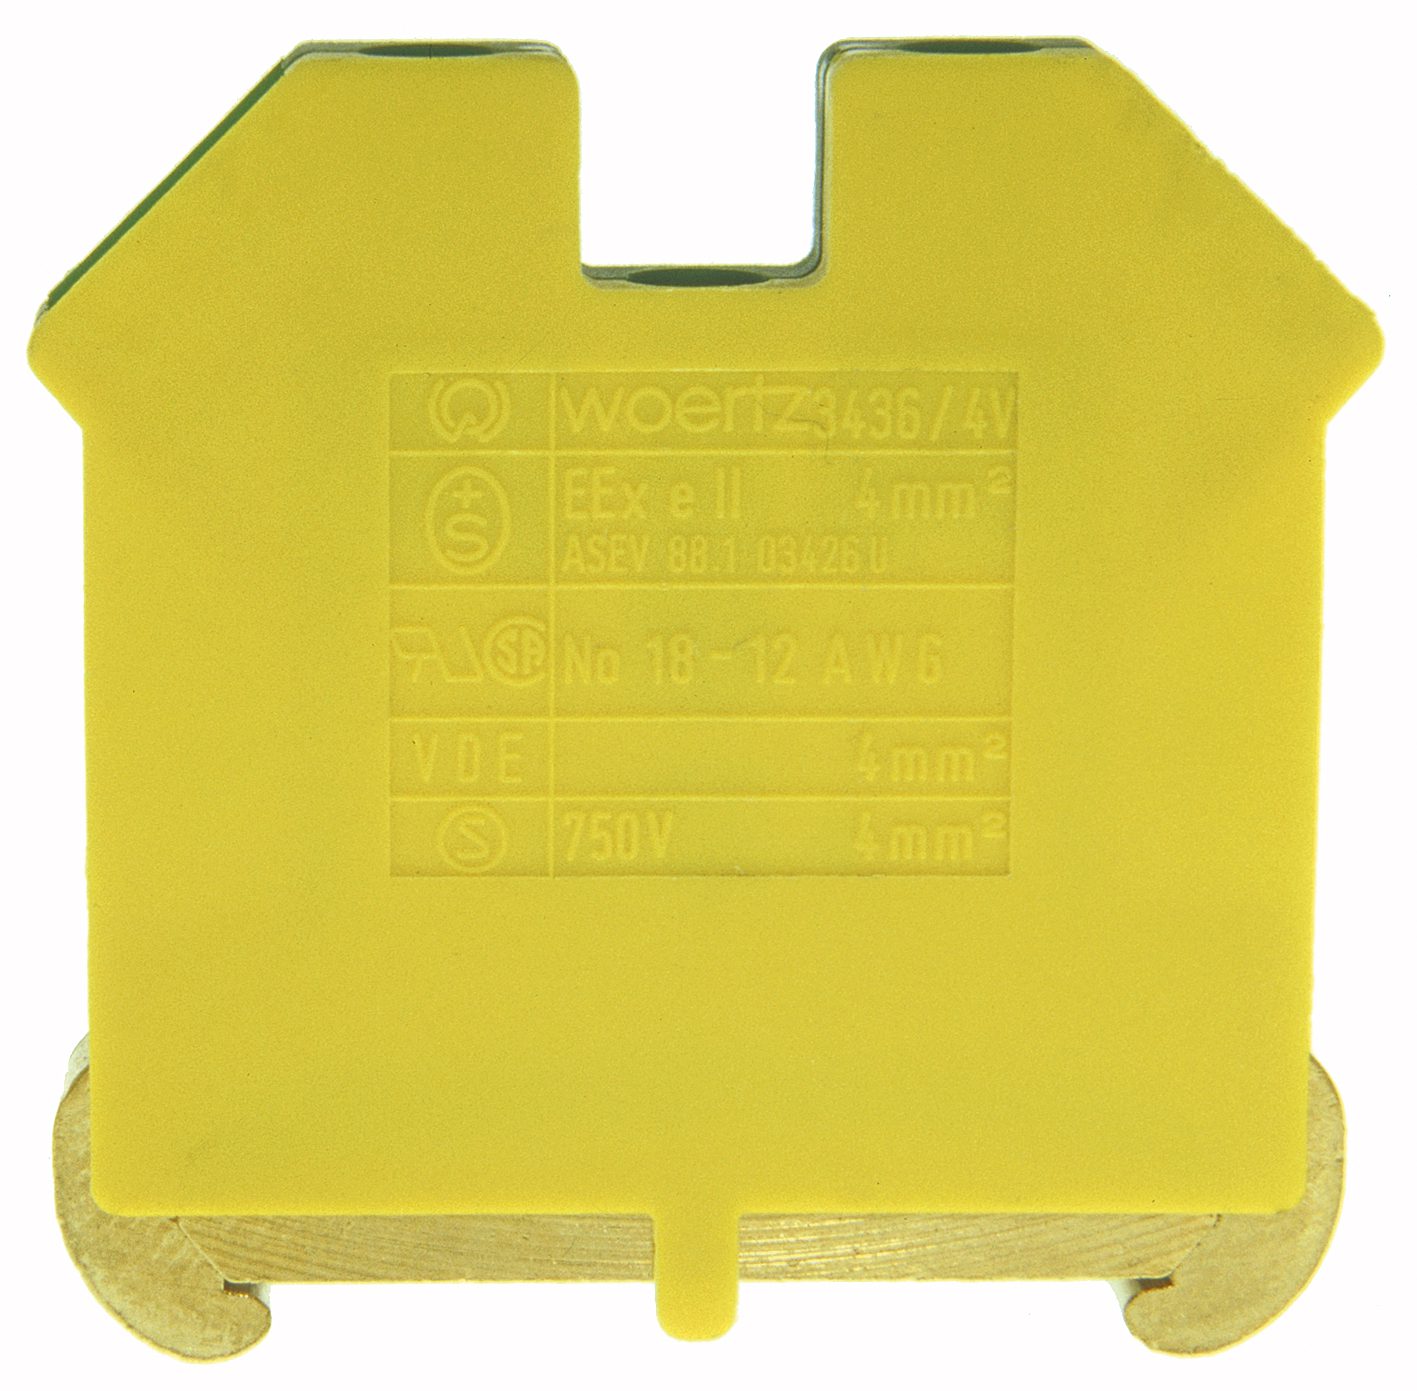 Borne pour conducteur de protection DIN35 4mm² vert/jaune